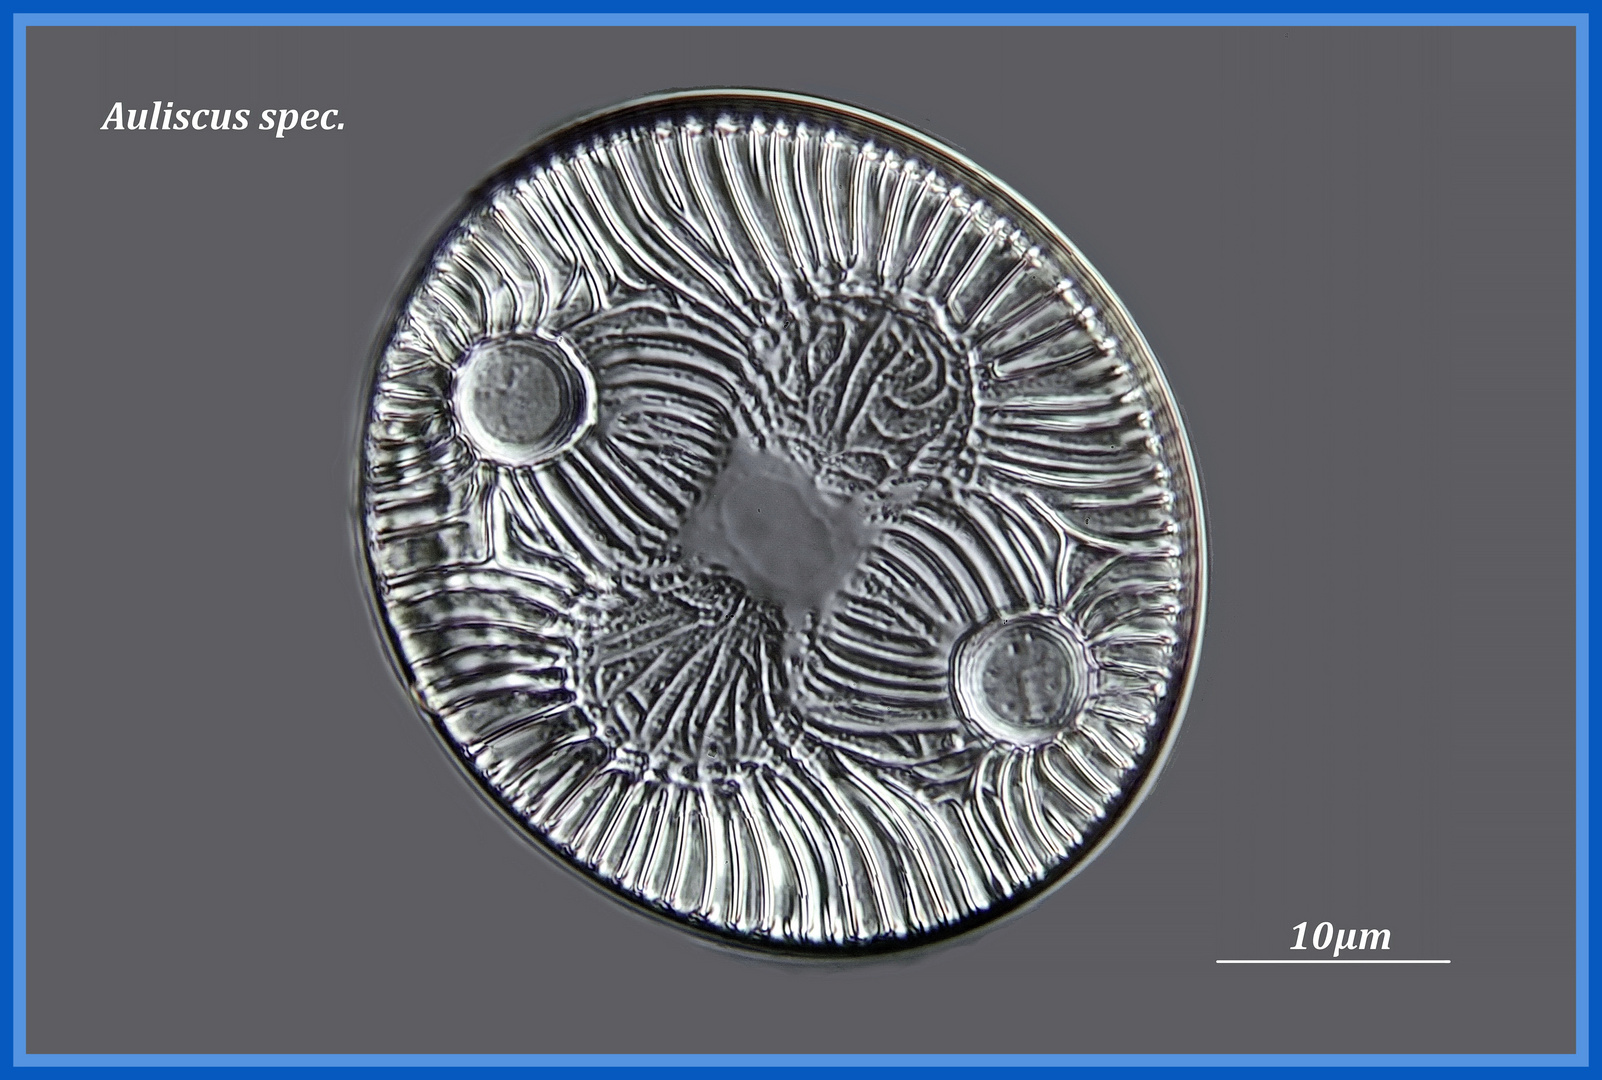 Diatomee Auliscus spec. fossil